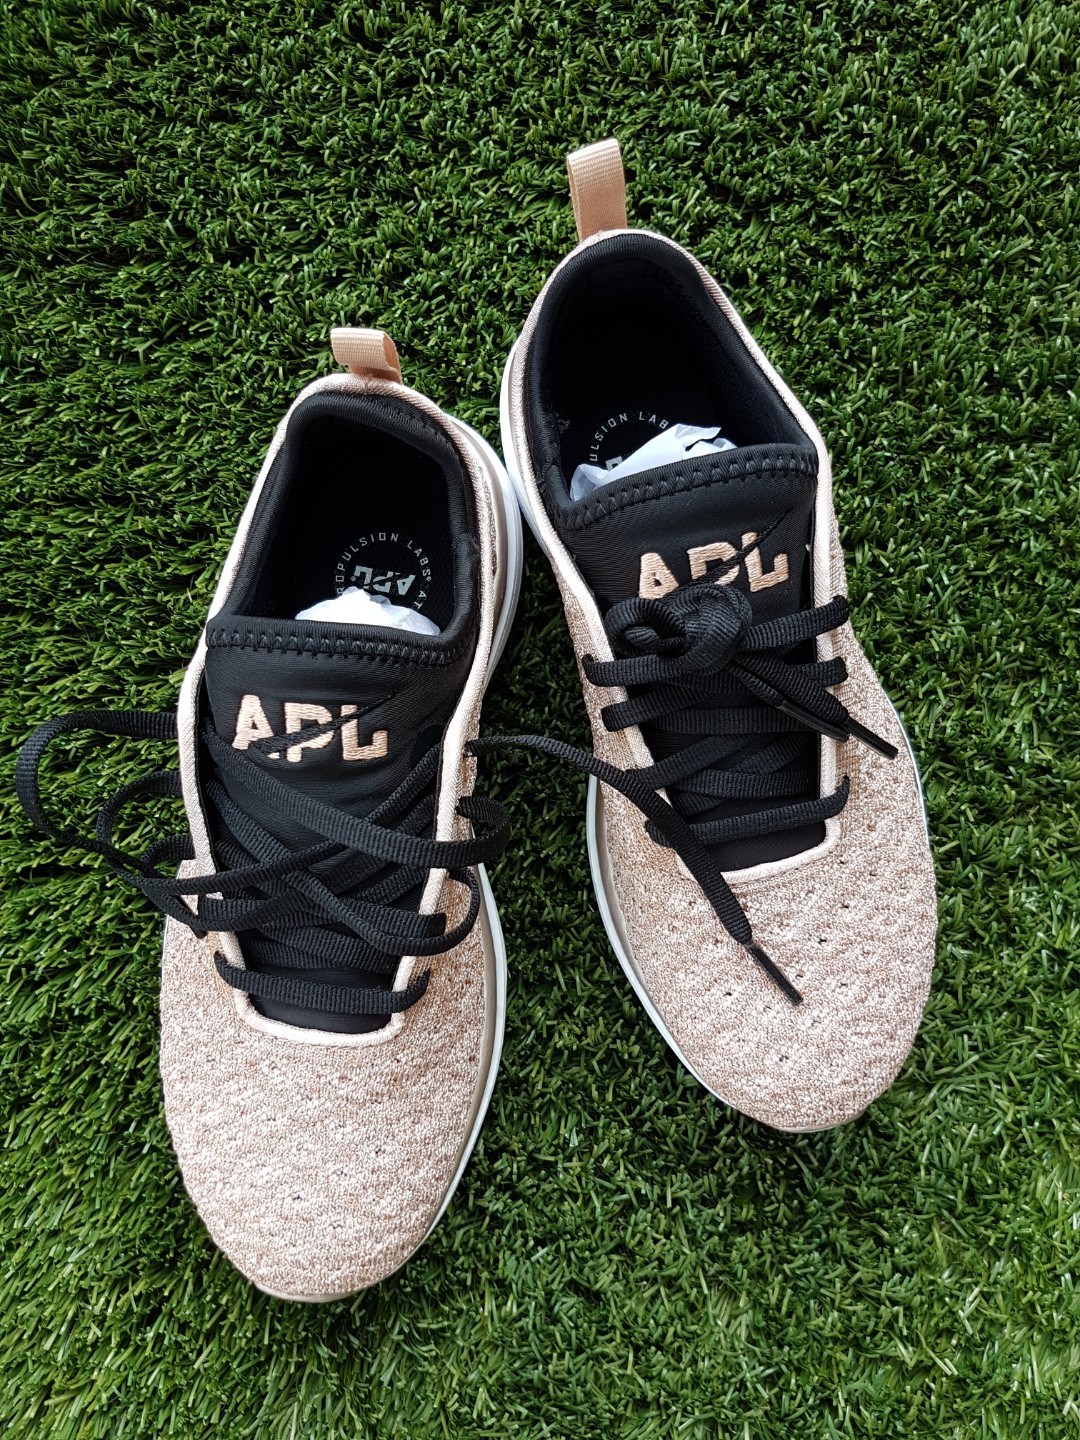 apl sneakers